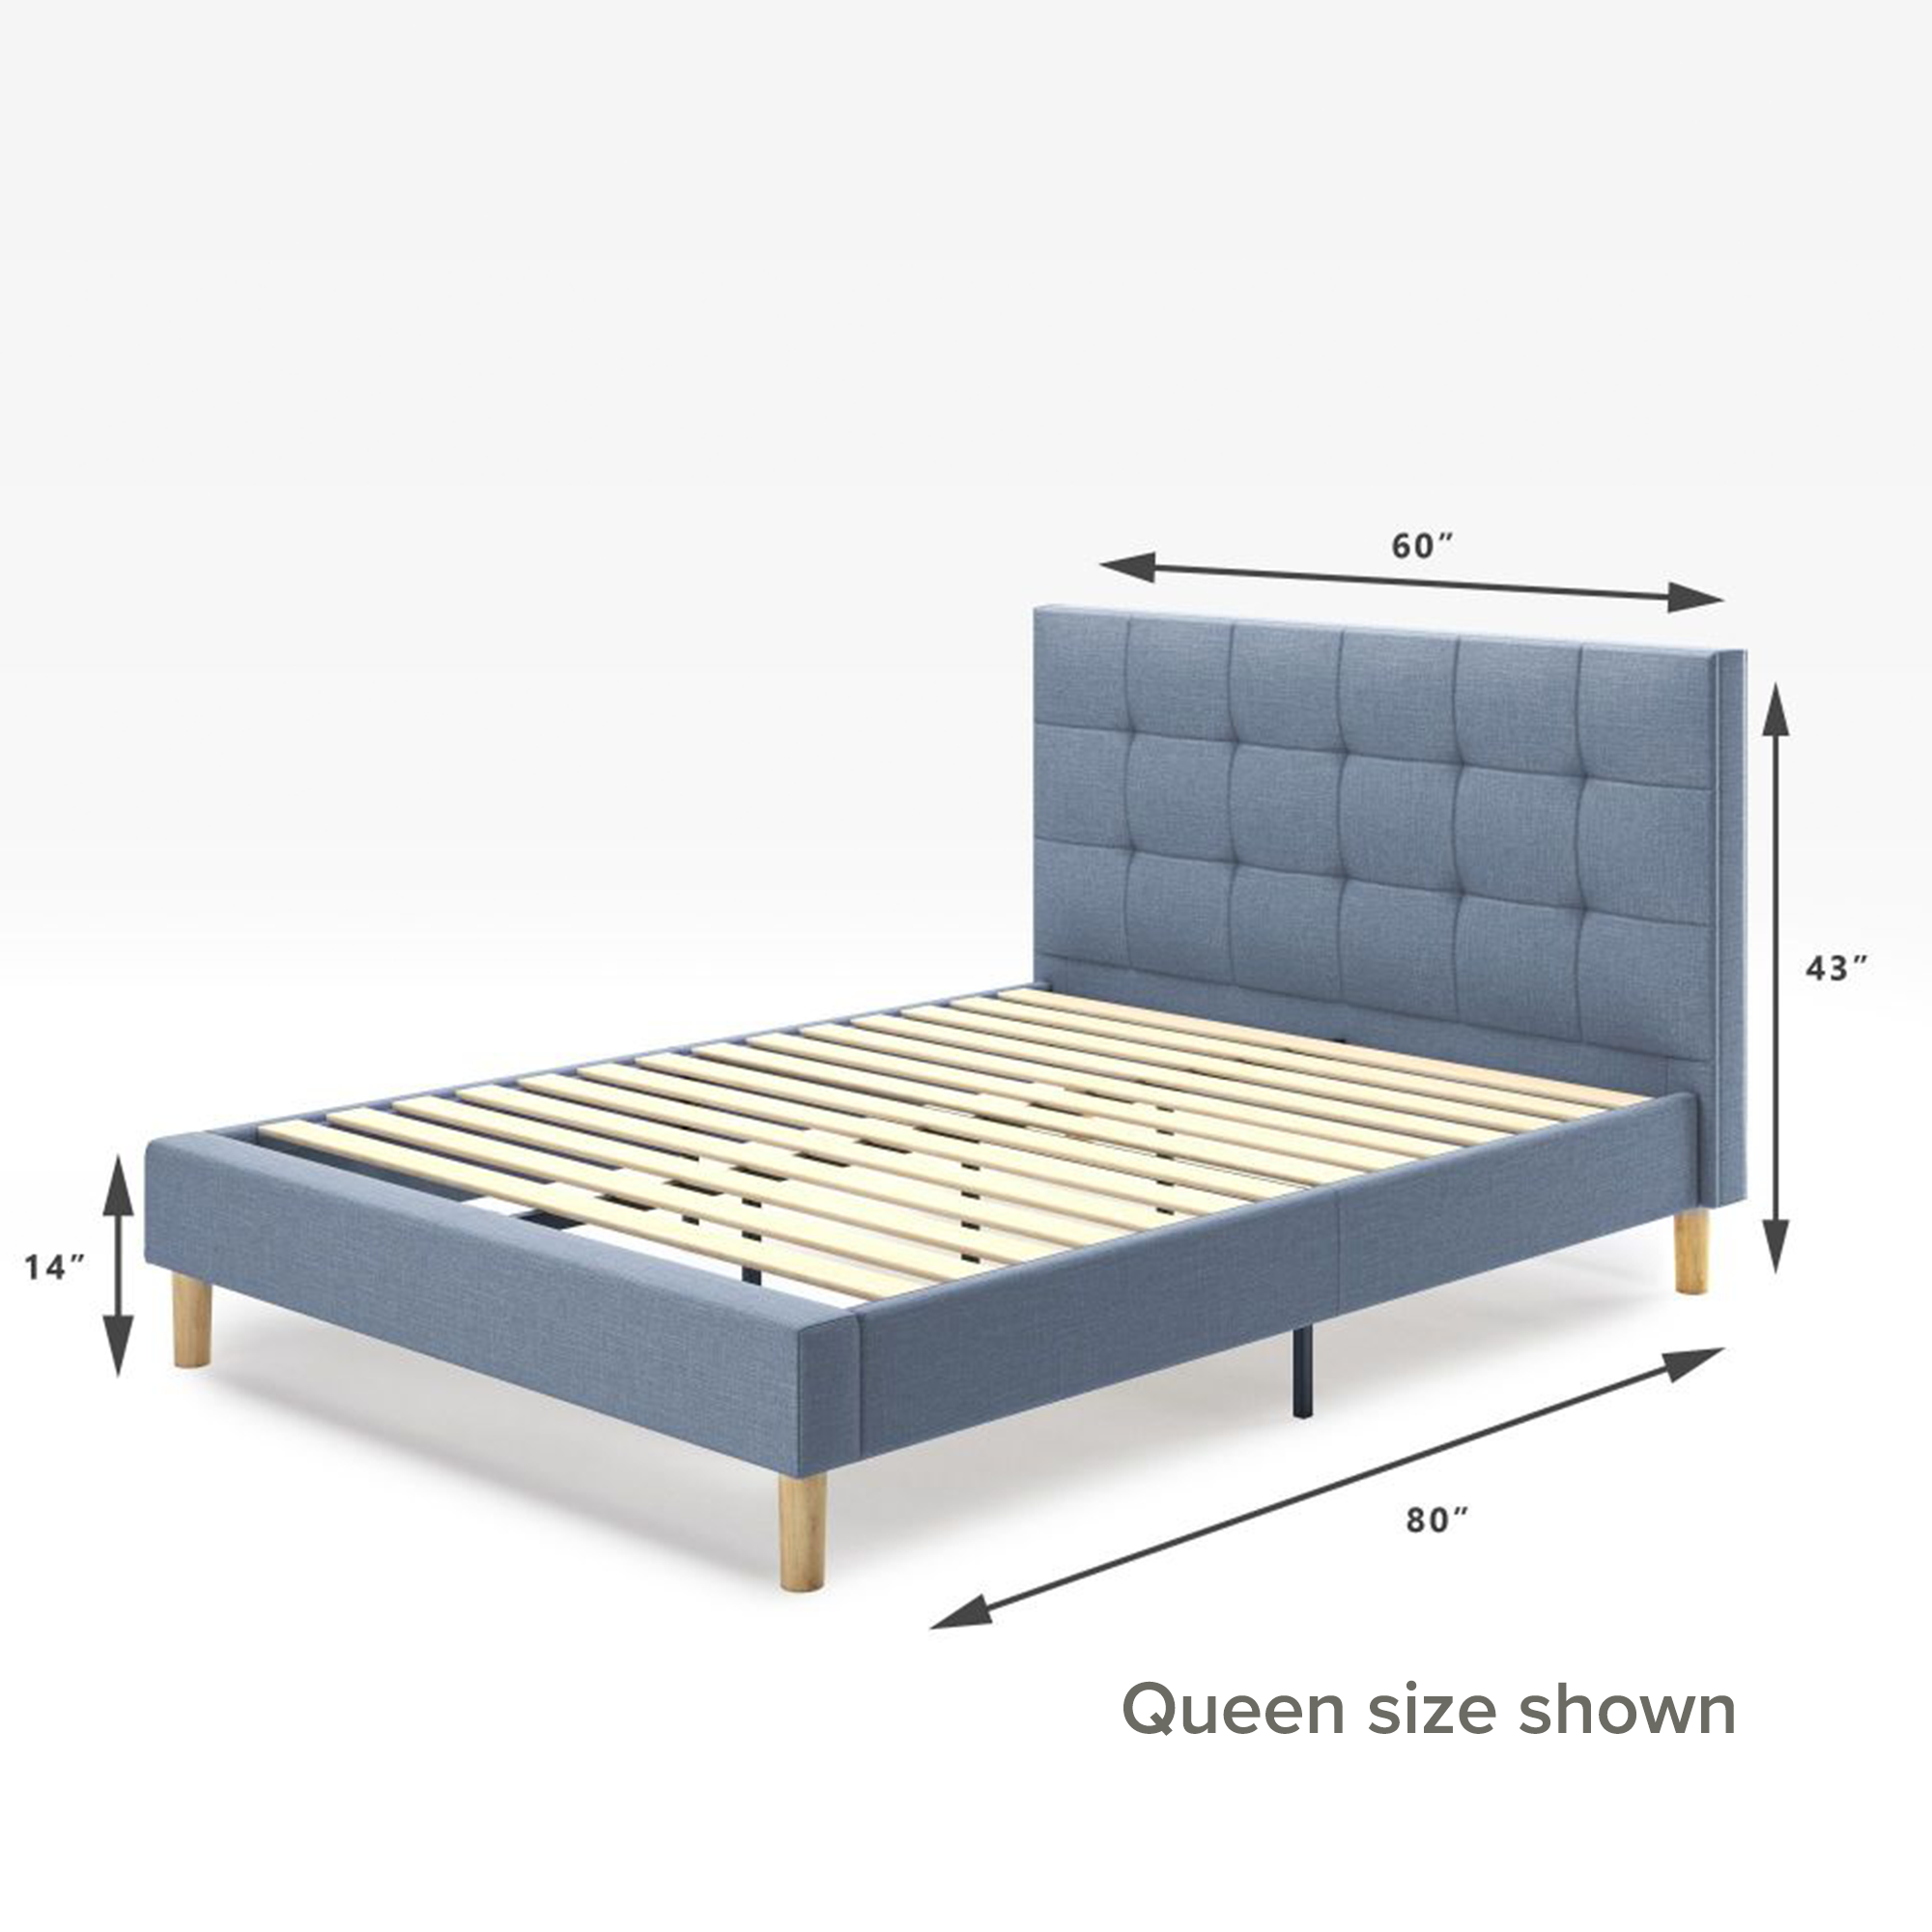 Lottie upholstered platform bed frame queen size shown